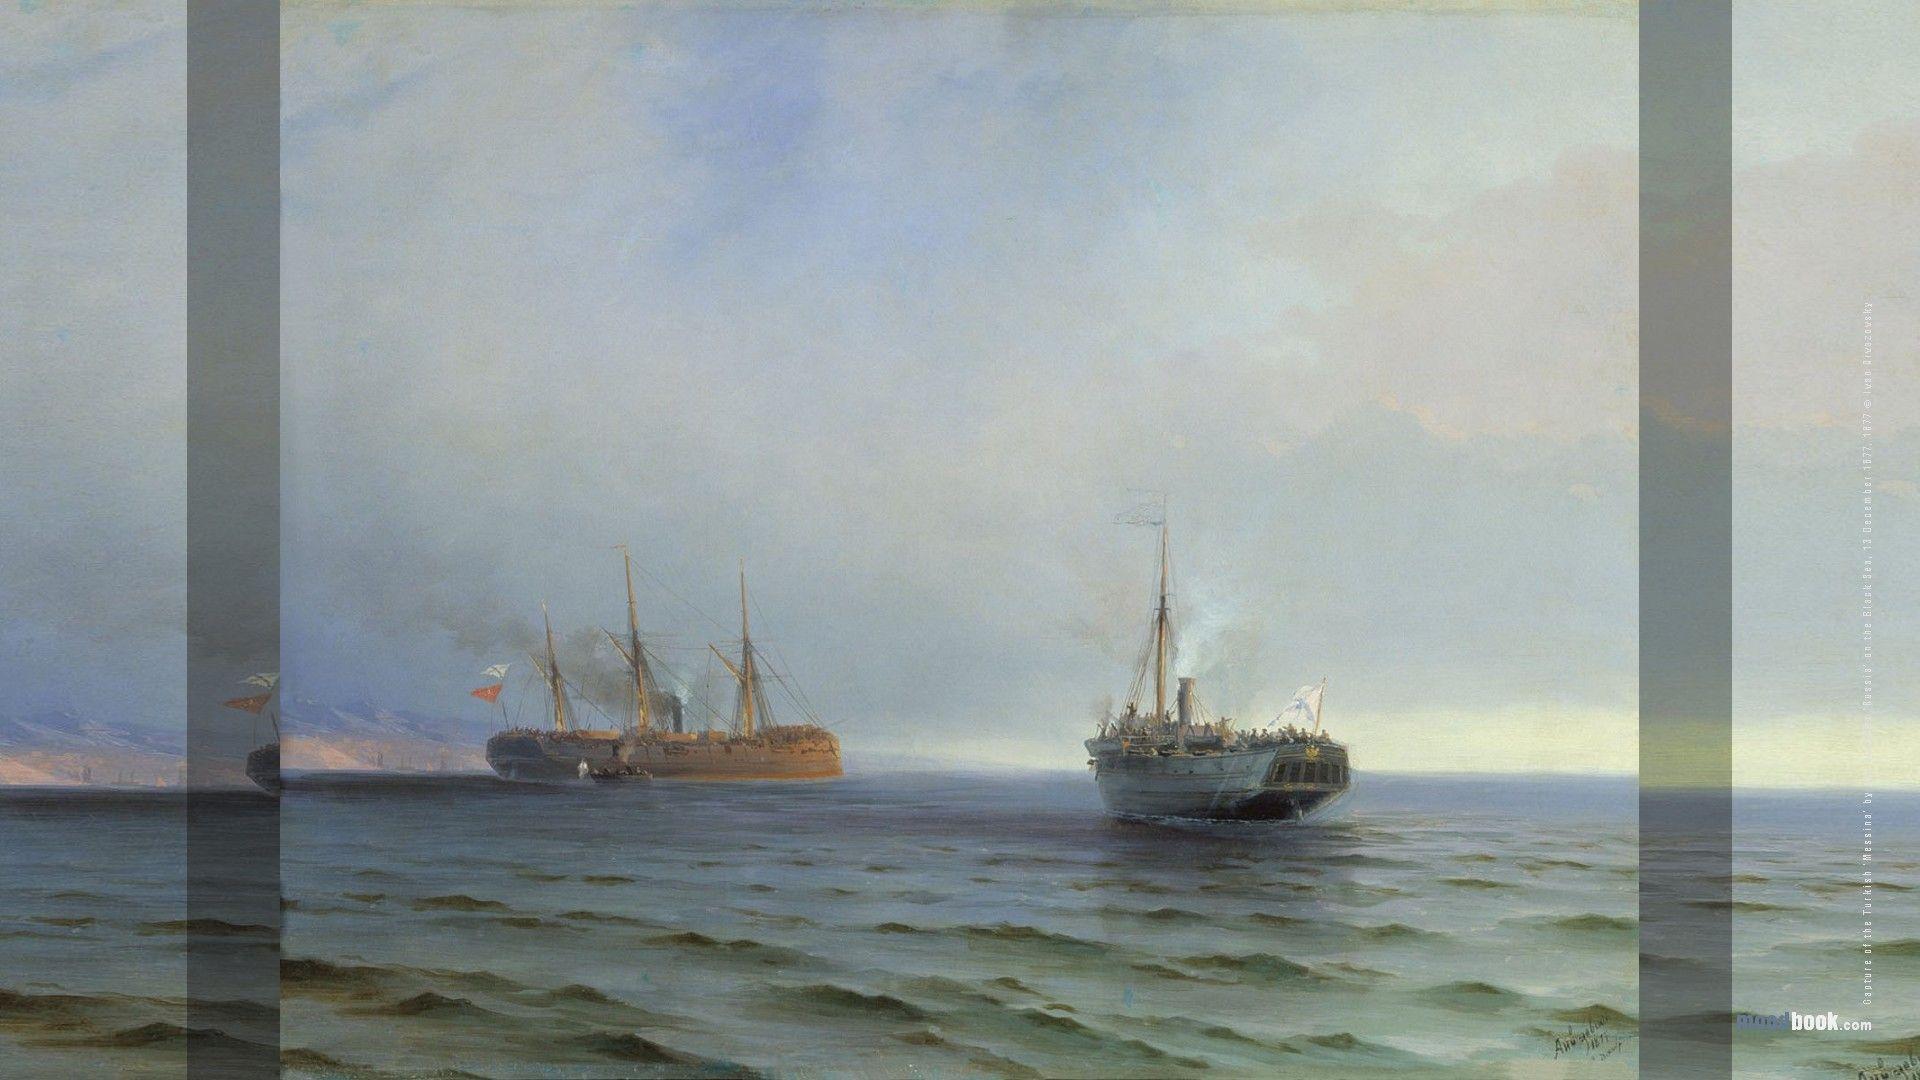 نقاشی سبک رمانتیسم Romantisme از کشتی های درون دریا